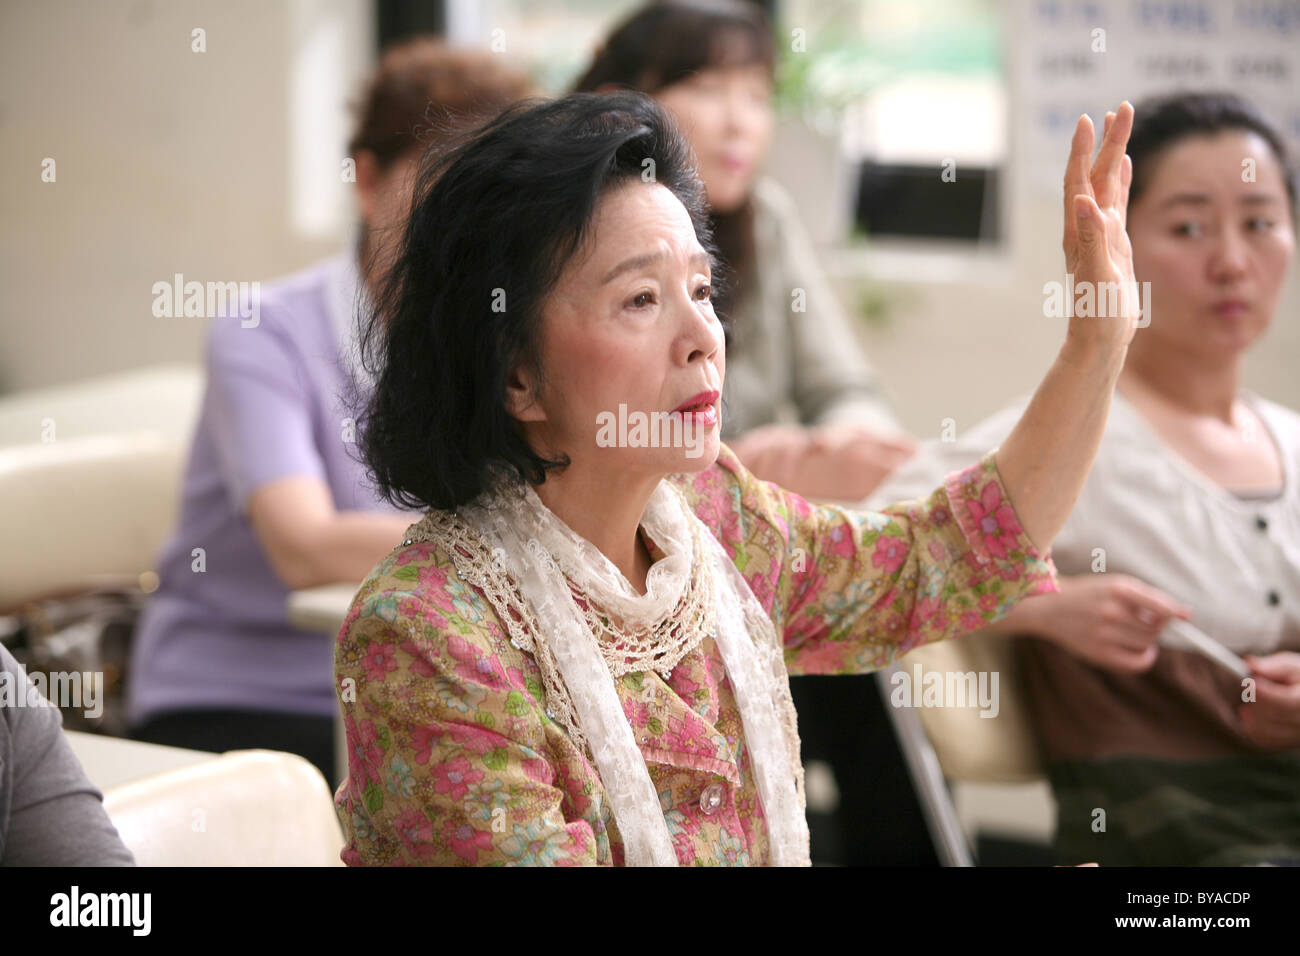 La poesia Shi Anno : 2010 - Corée du sud Direttore : Lee Chang-dong Yoon Yung-hee, Da-wit Lee Foto Stock